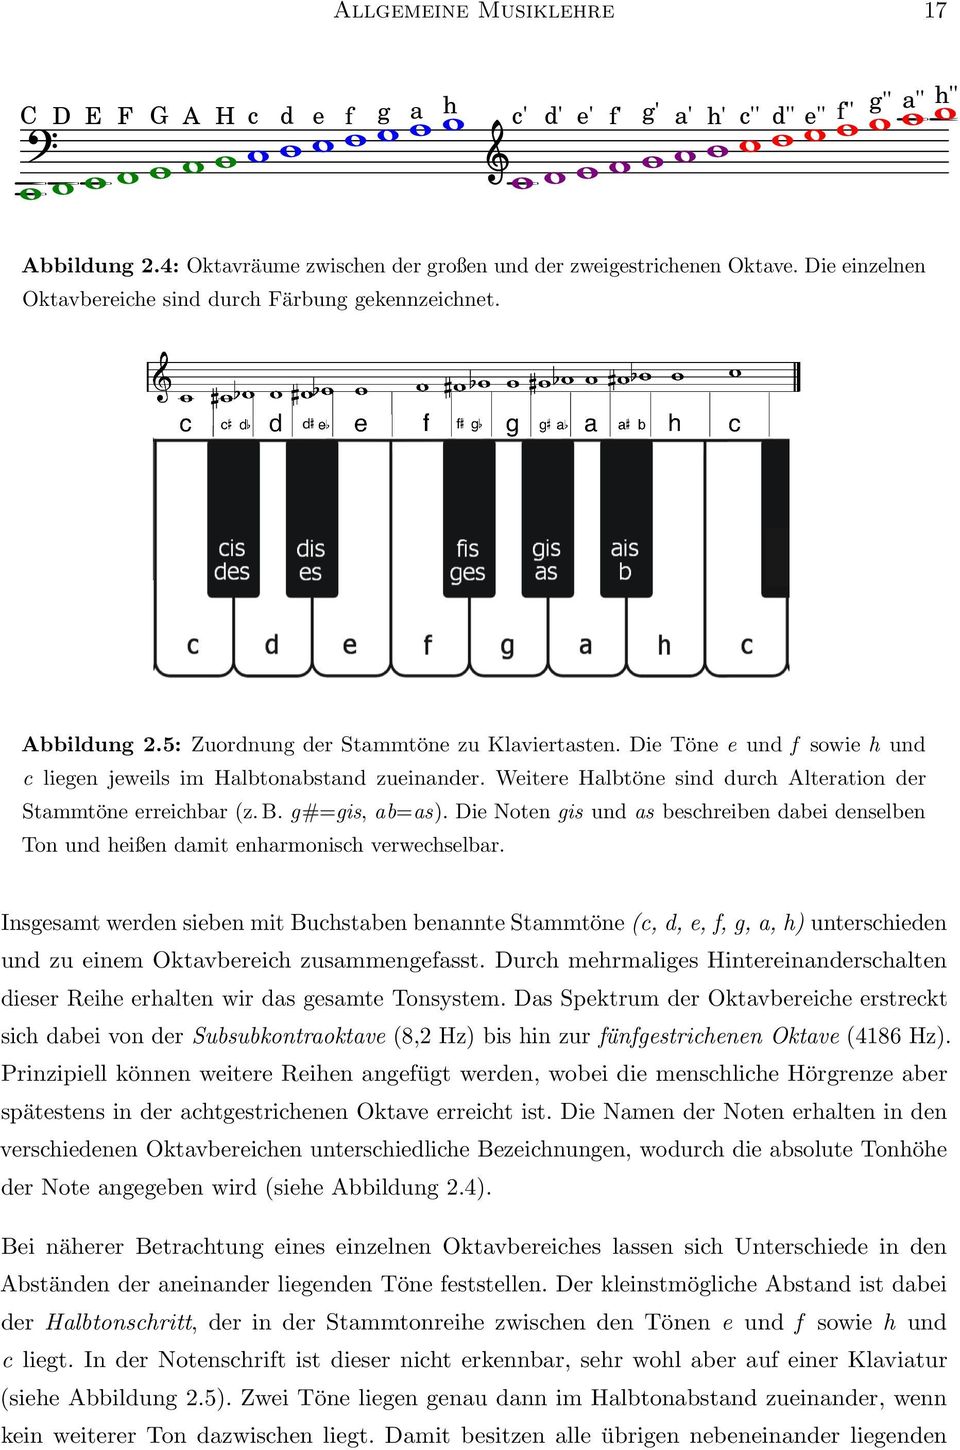 Weitere Halbtöne sind durch Alteration der Stammtöne erreichbar (z. B. g#=gis, ab=as). Die Noten gis und as beschreiben dabei denselben Ton und heißen damit enharmonisch verwechselbar.